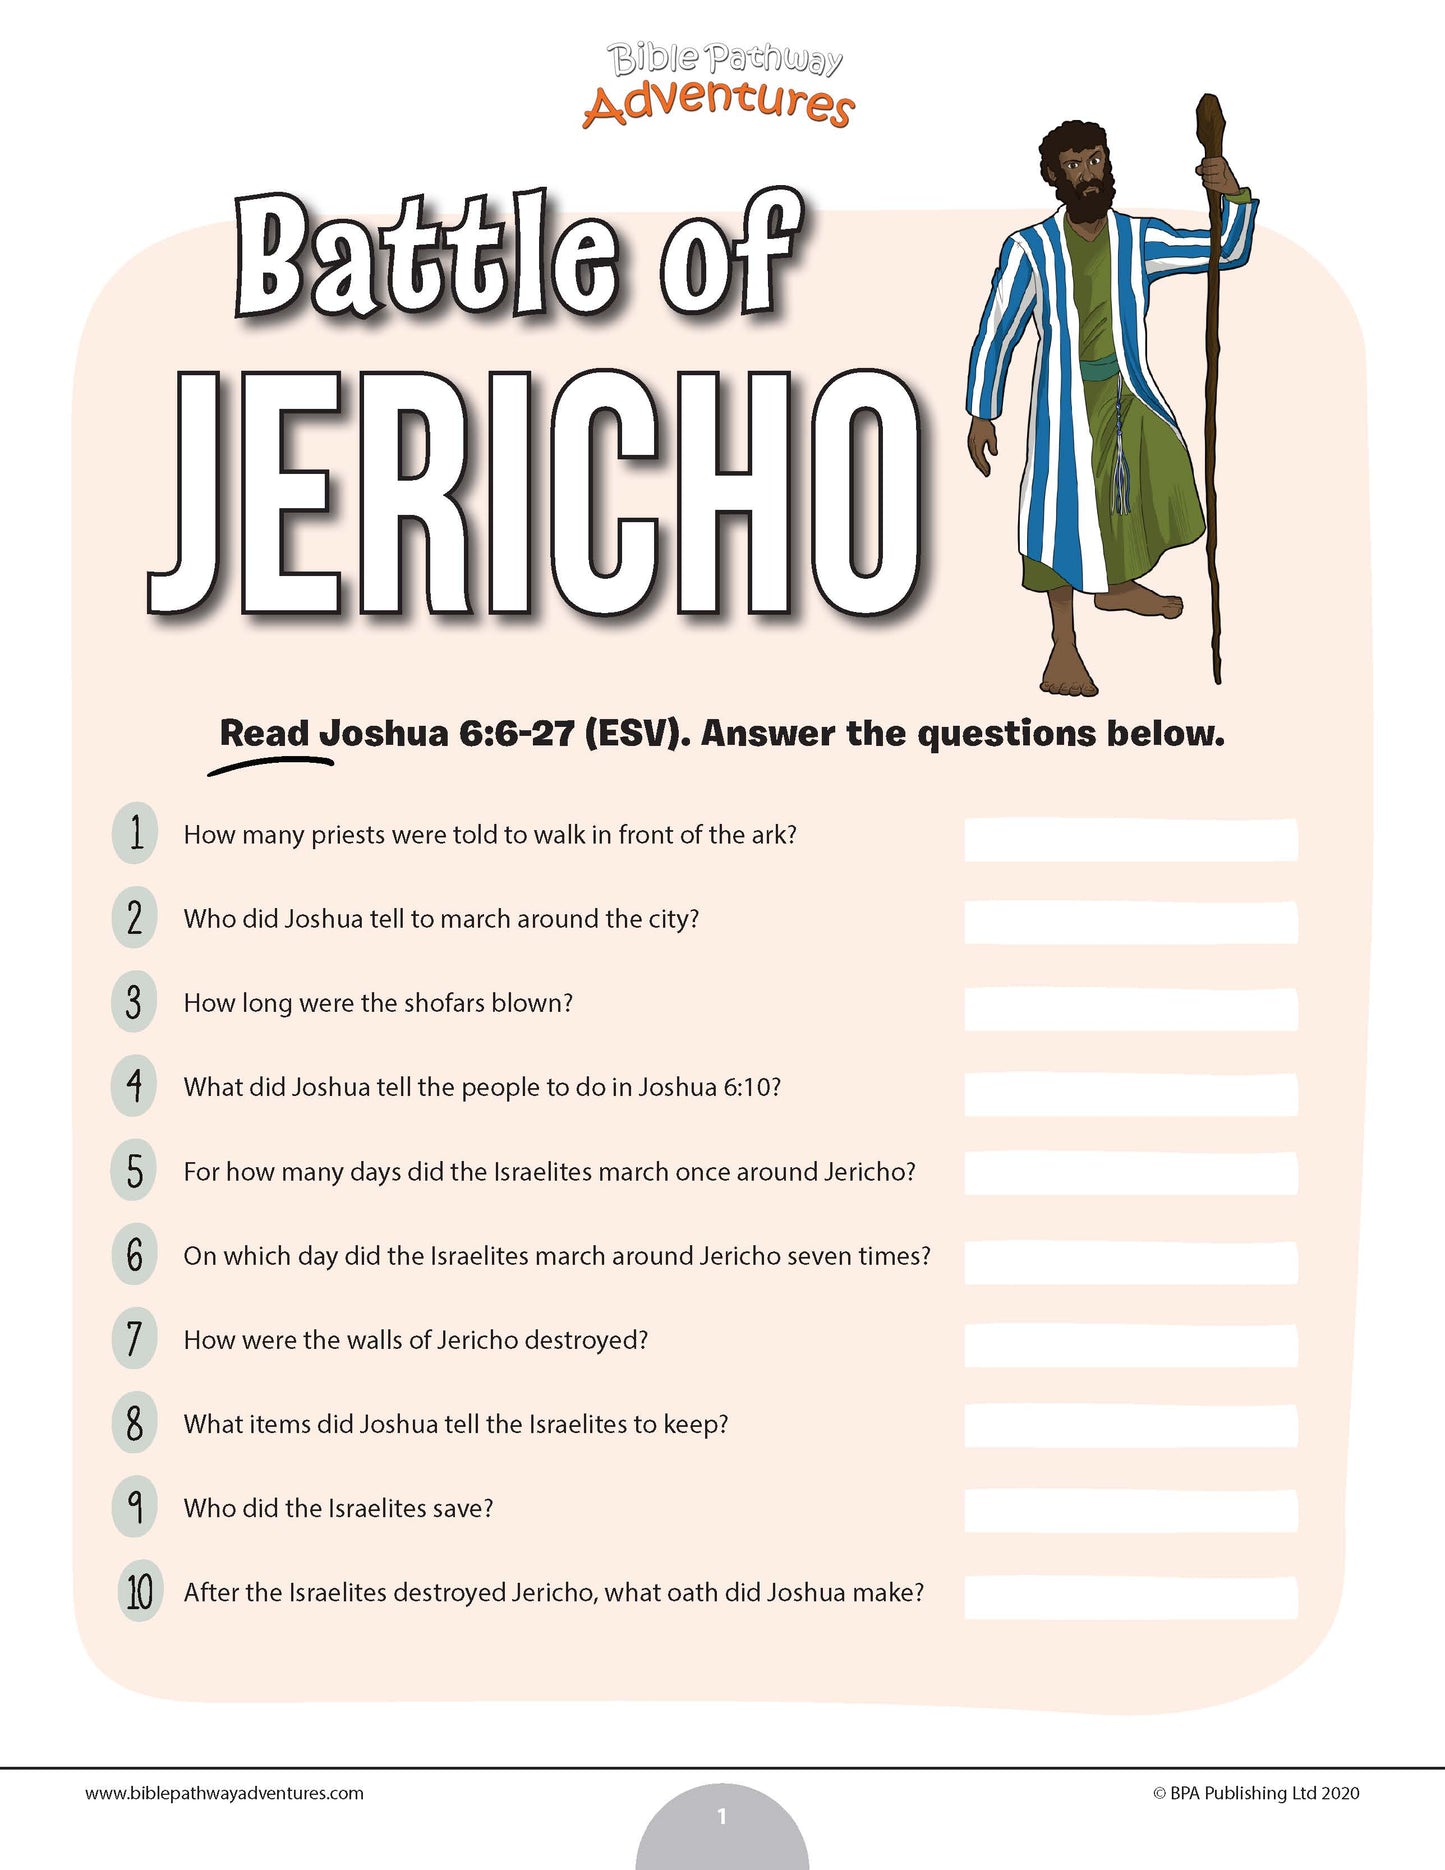 Battle of Jericho quiz (PDF)